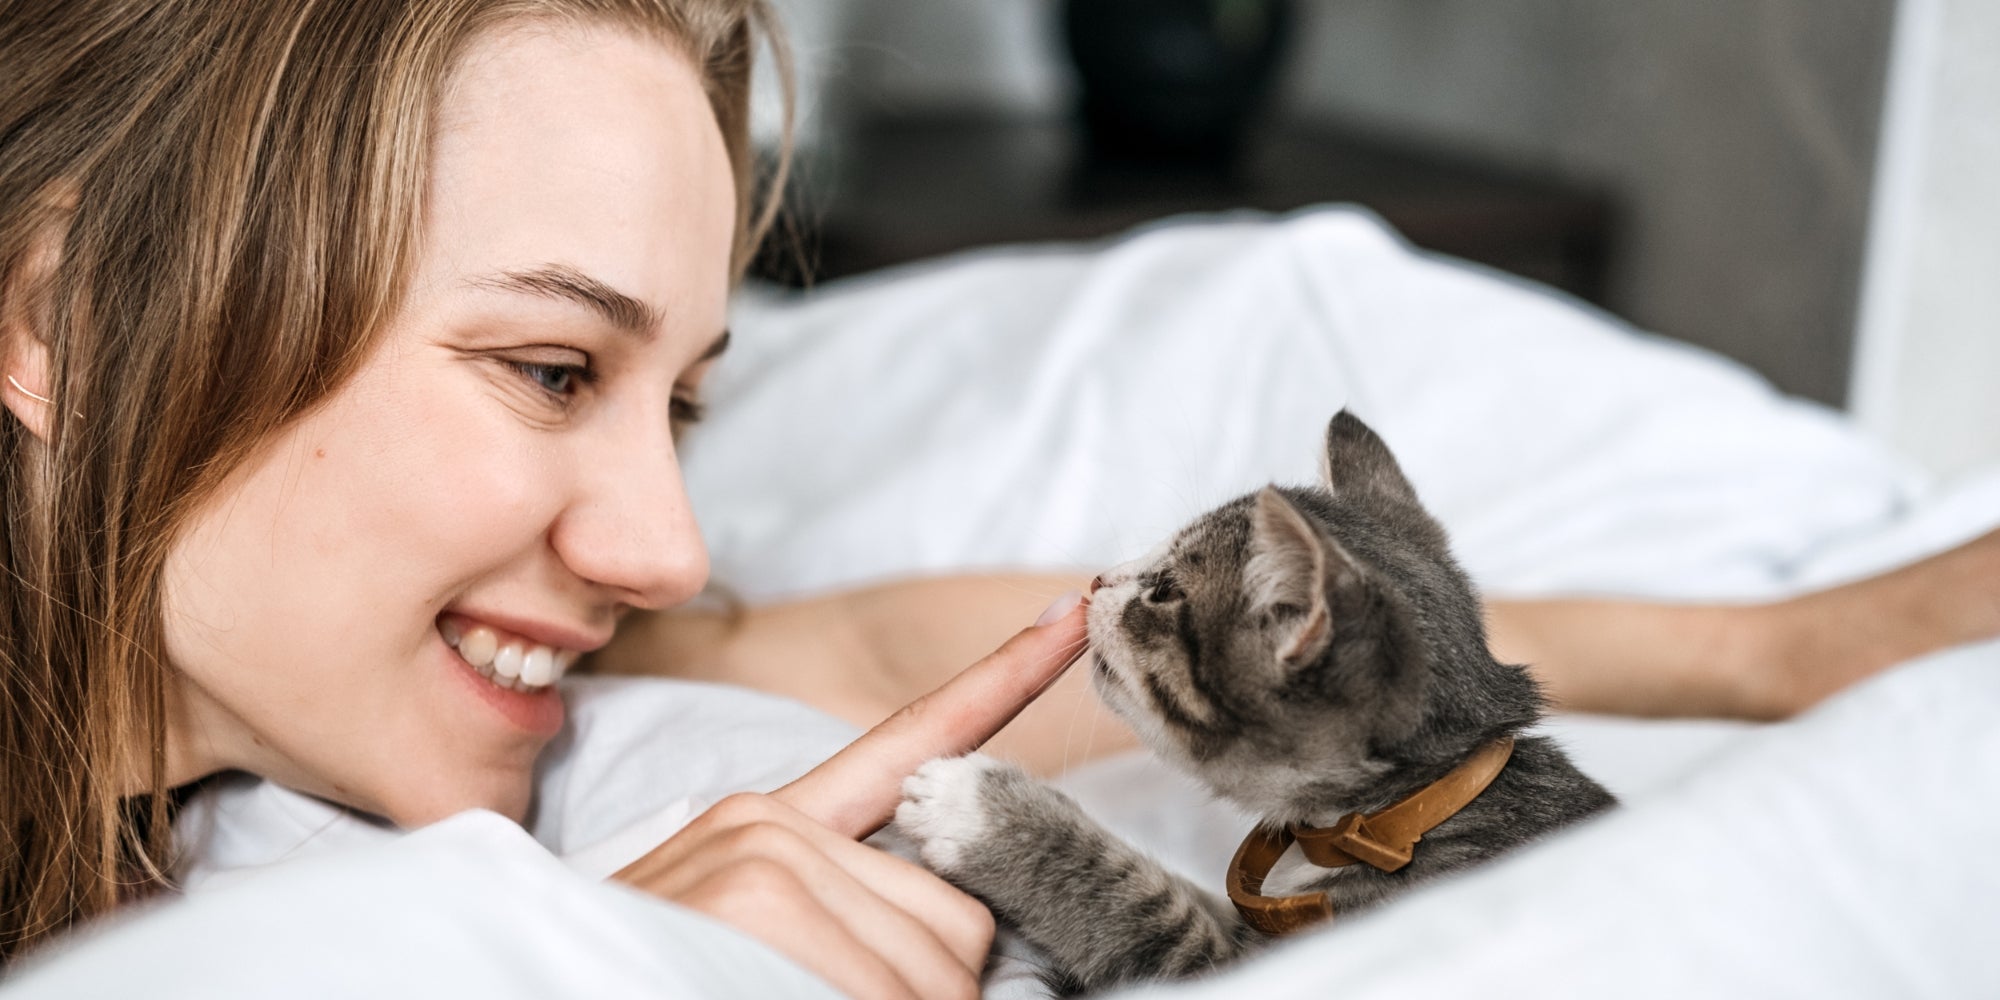 Retrato de mujer jugando con gatito gris adoptado sin hogar